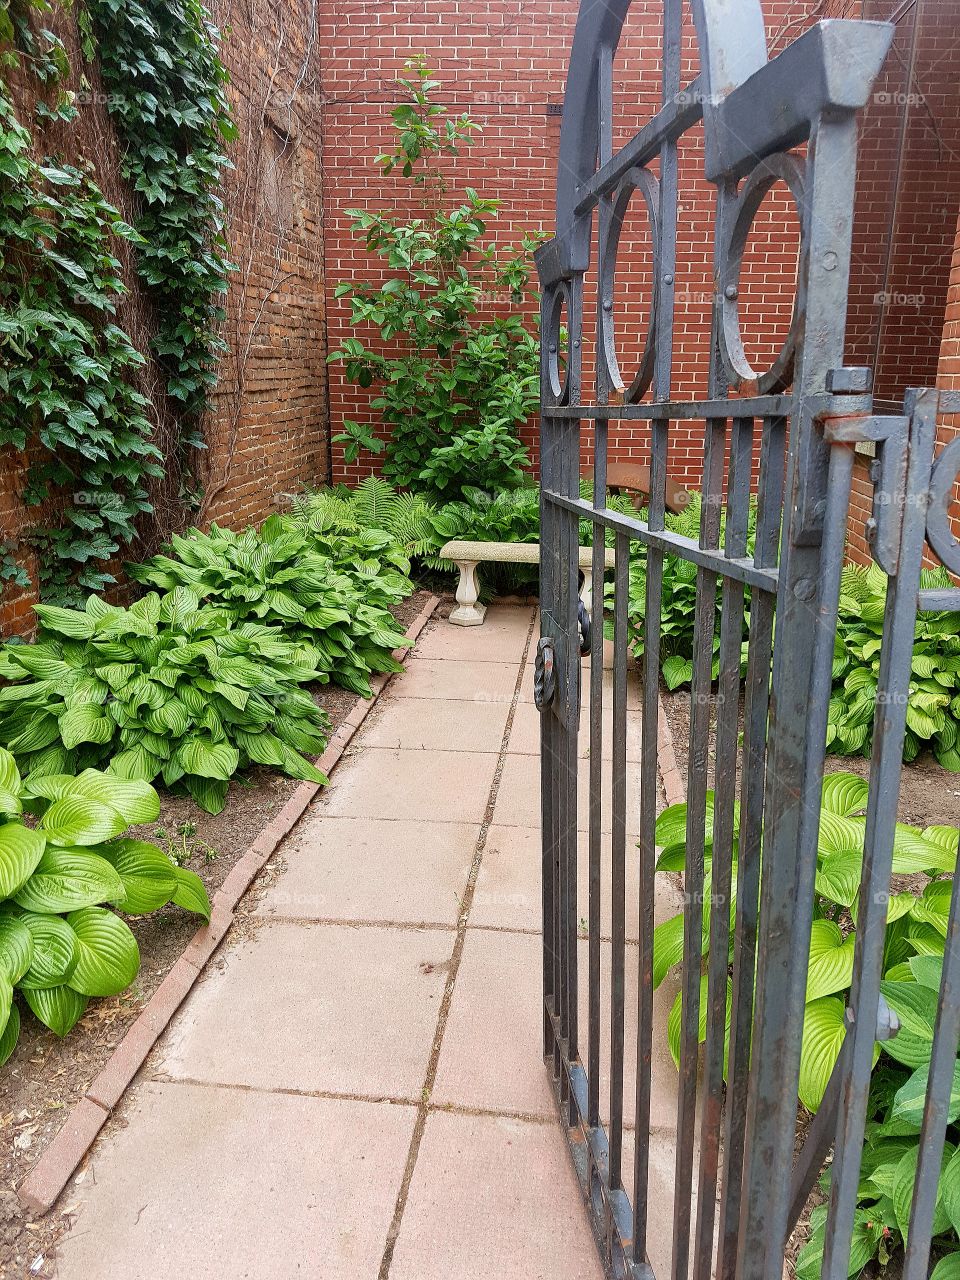 A little secret garden bench within town.